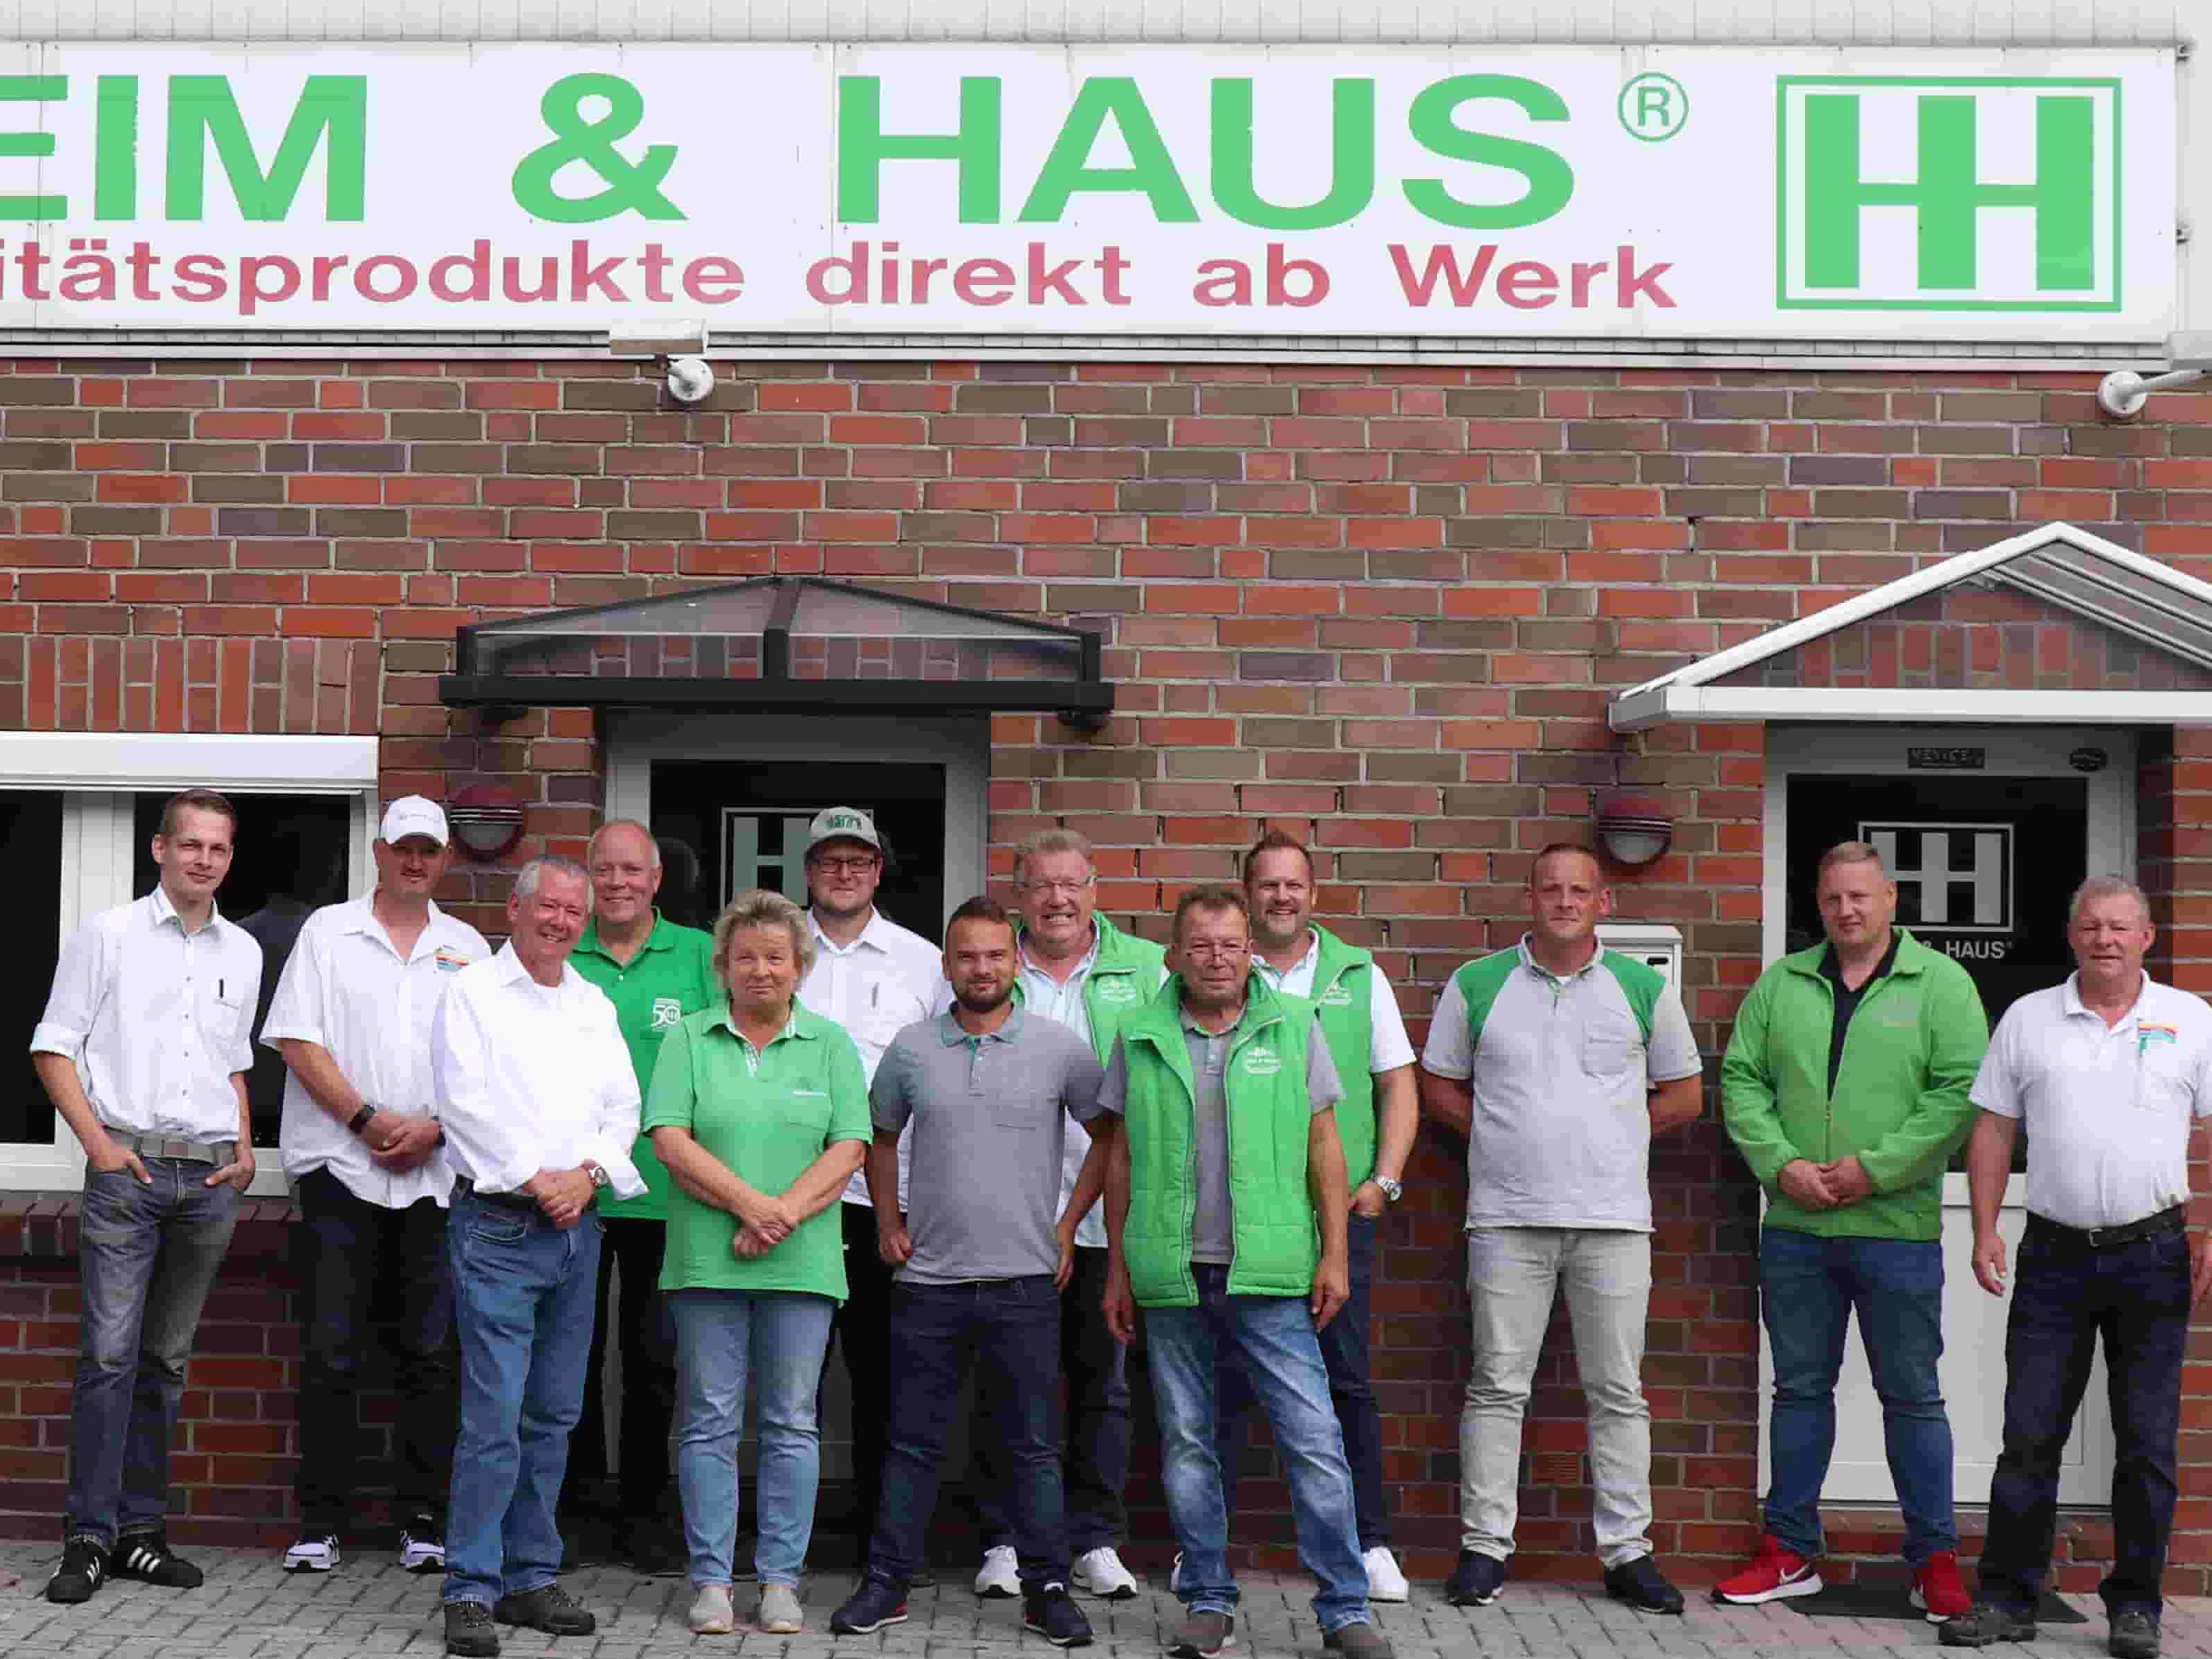 Gruppenbild eines Teams der Verkaufsleitung Emden vor dem Gebäude